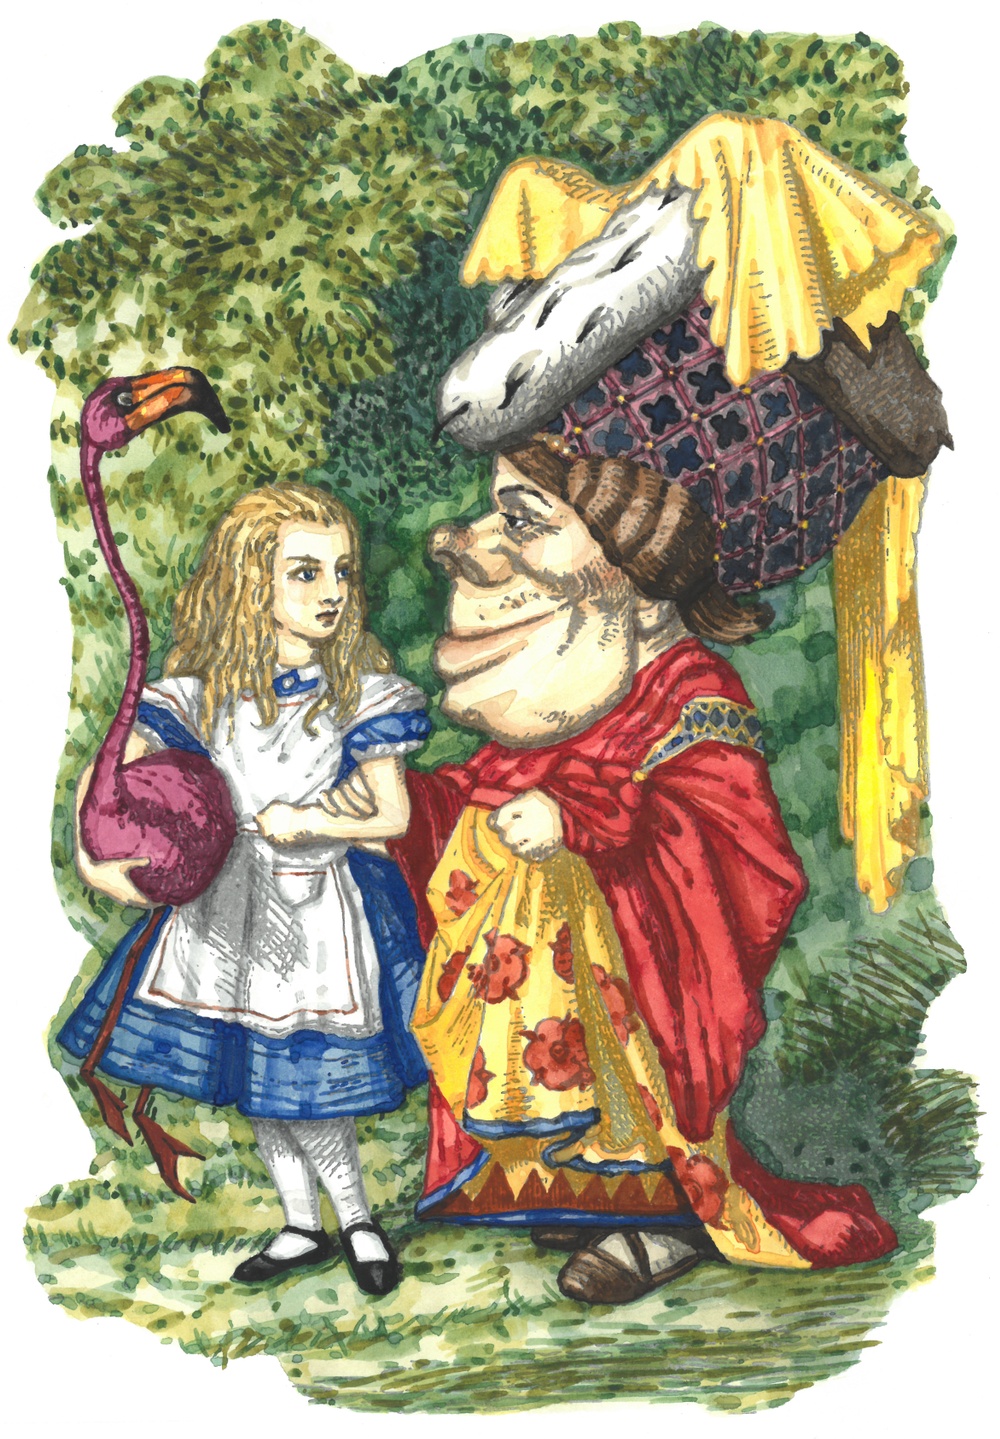 Illustration av John Tenniel, färglagd av Olle Ekström. 